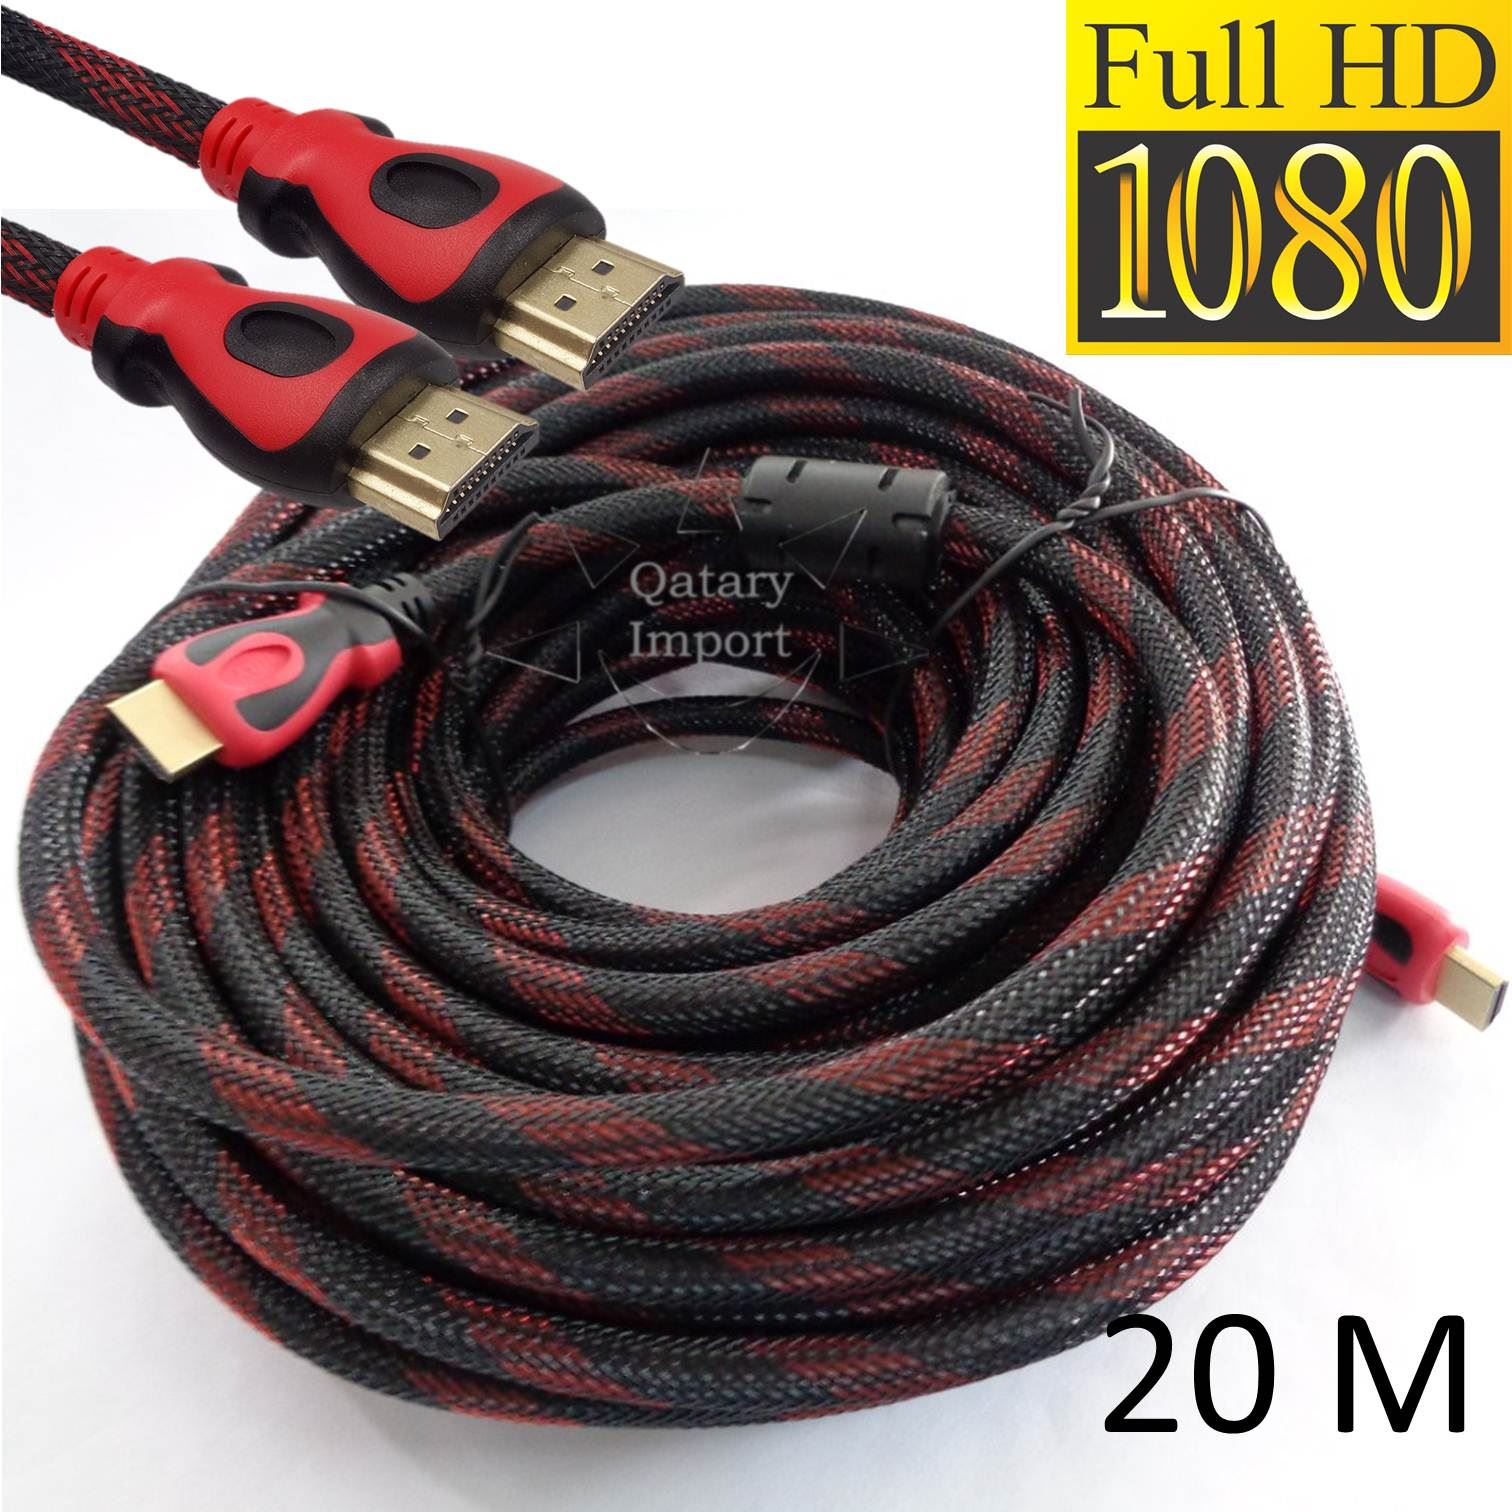 Cable Hdmi 20 metros Enmallado V1.4